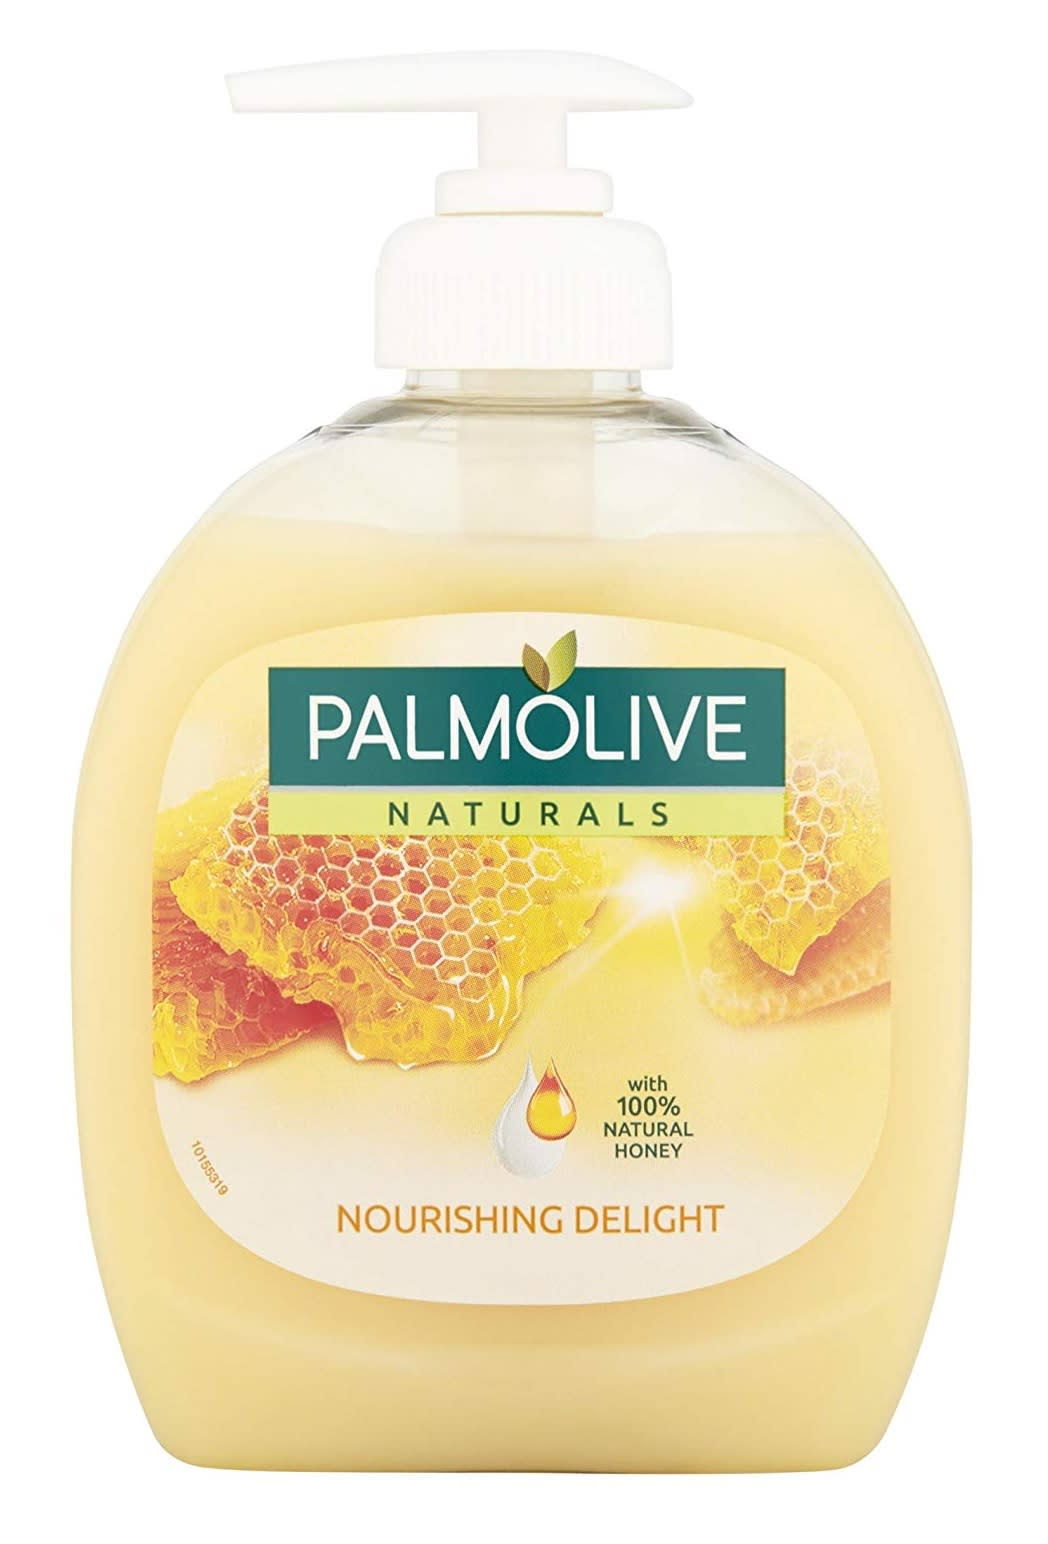 Palmolive Naturals Liquid Handwash - 300ml, Milk & Honey